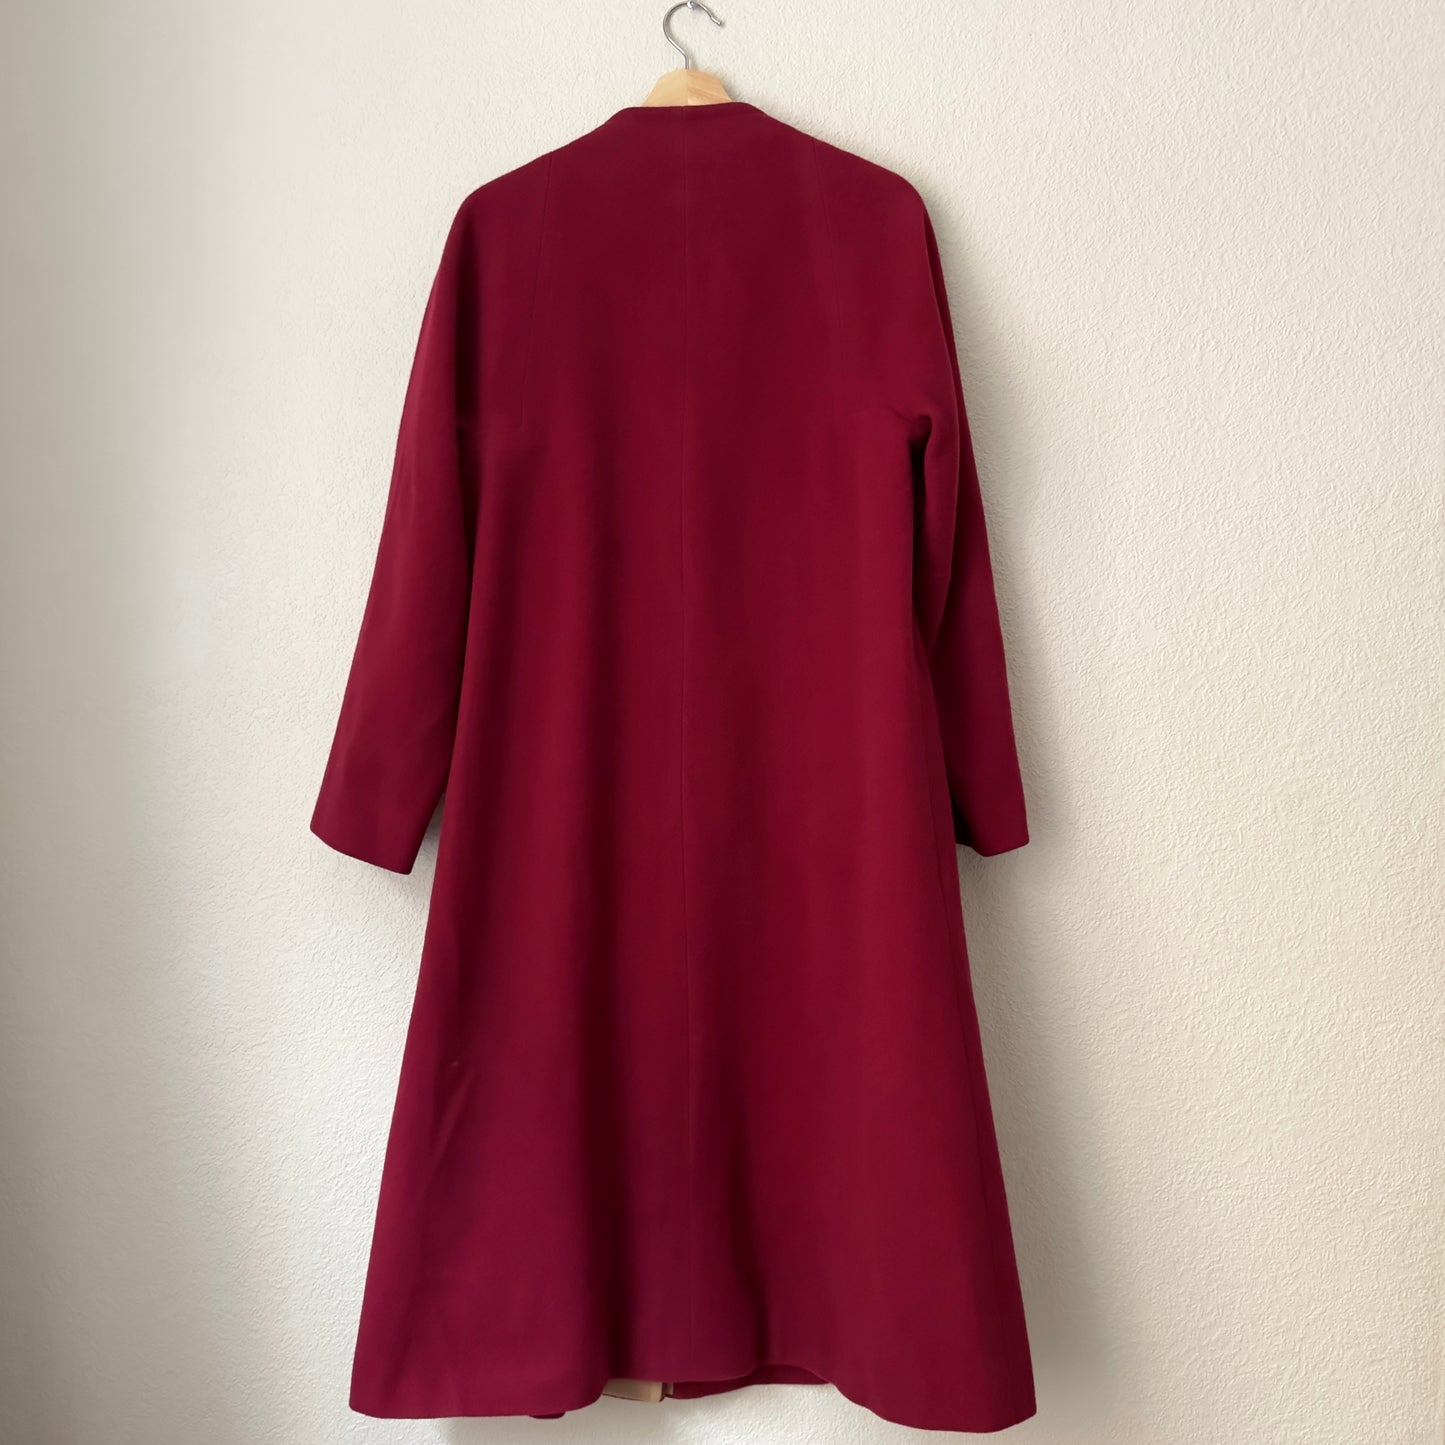 Vintage Red Wool Coat - Mansfield